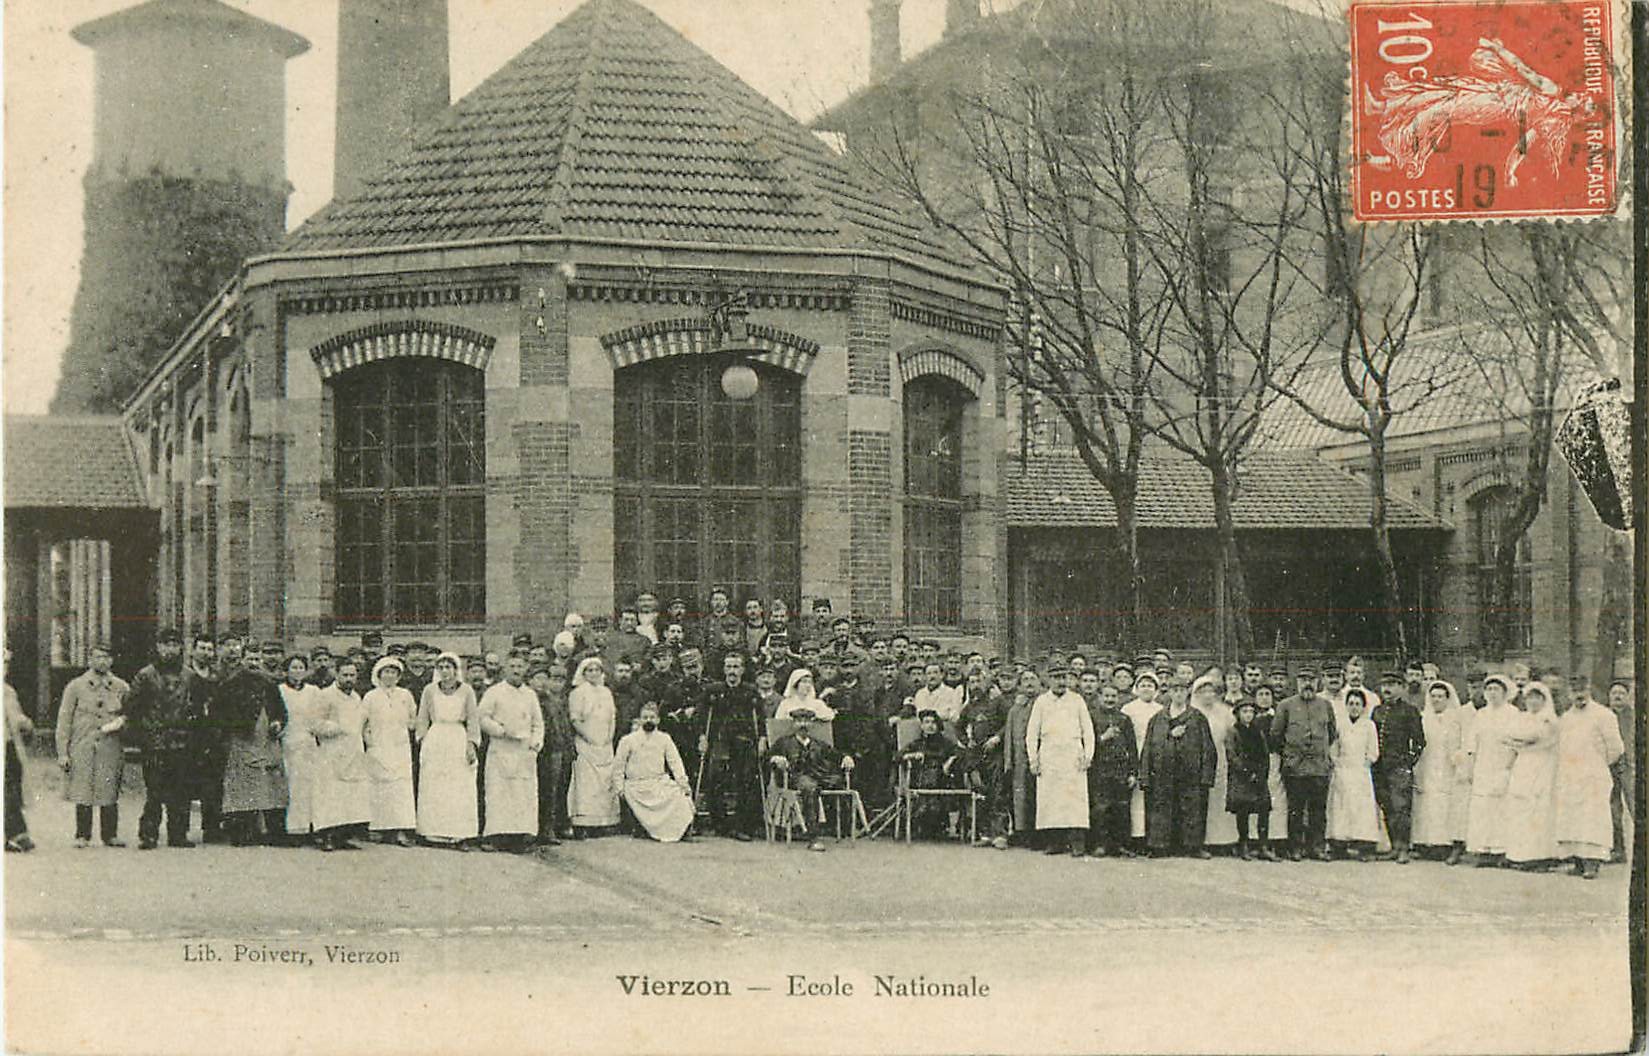 18 VIERZON. Ecole Nationale avec Blessés, Infirmières et Militaires 1919